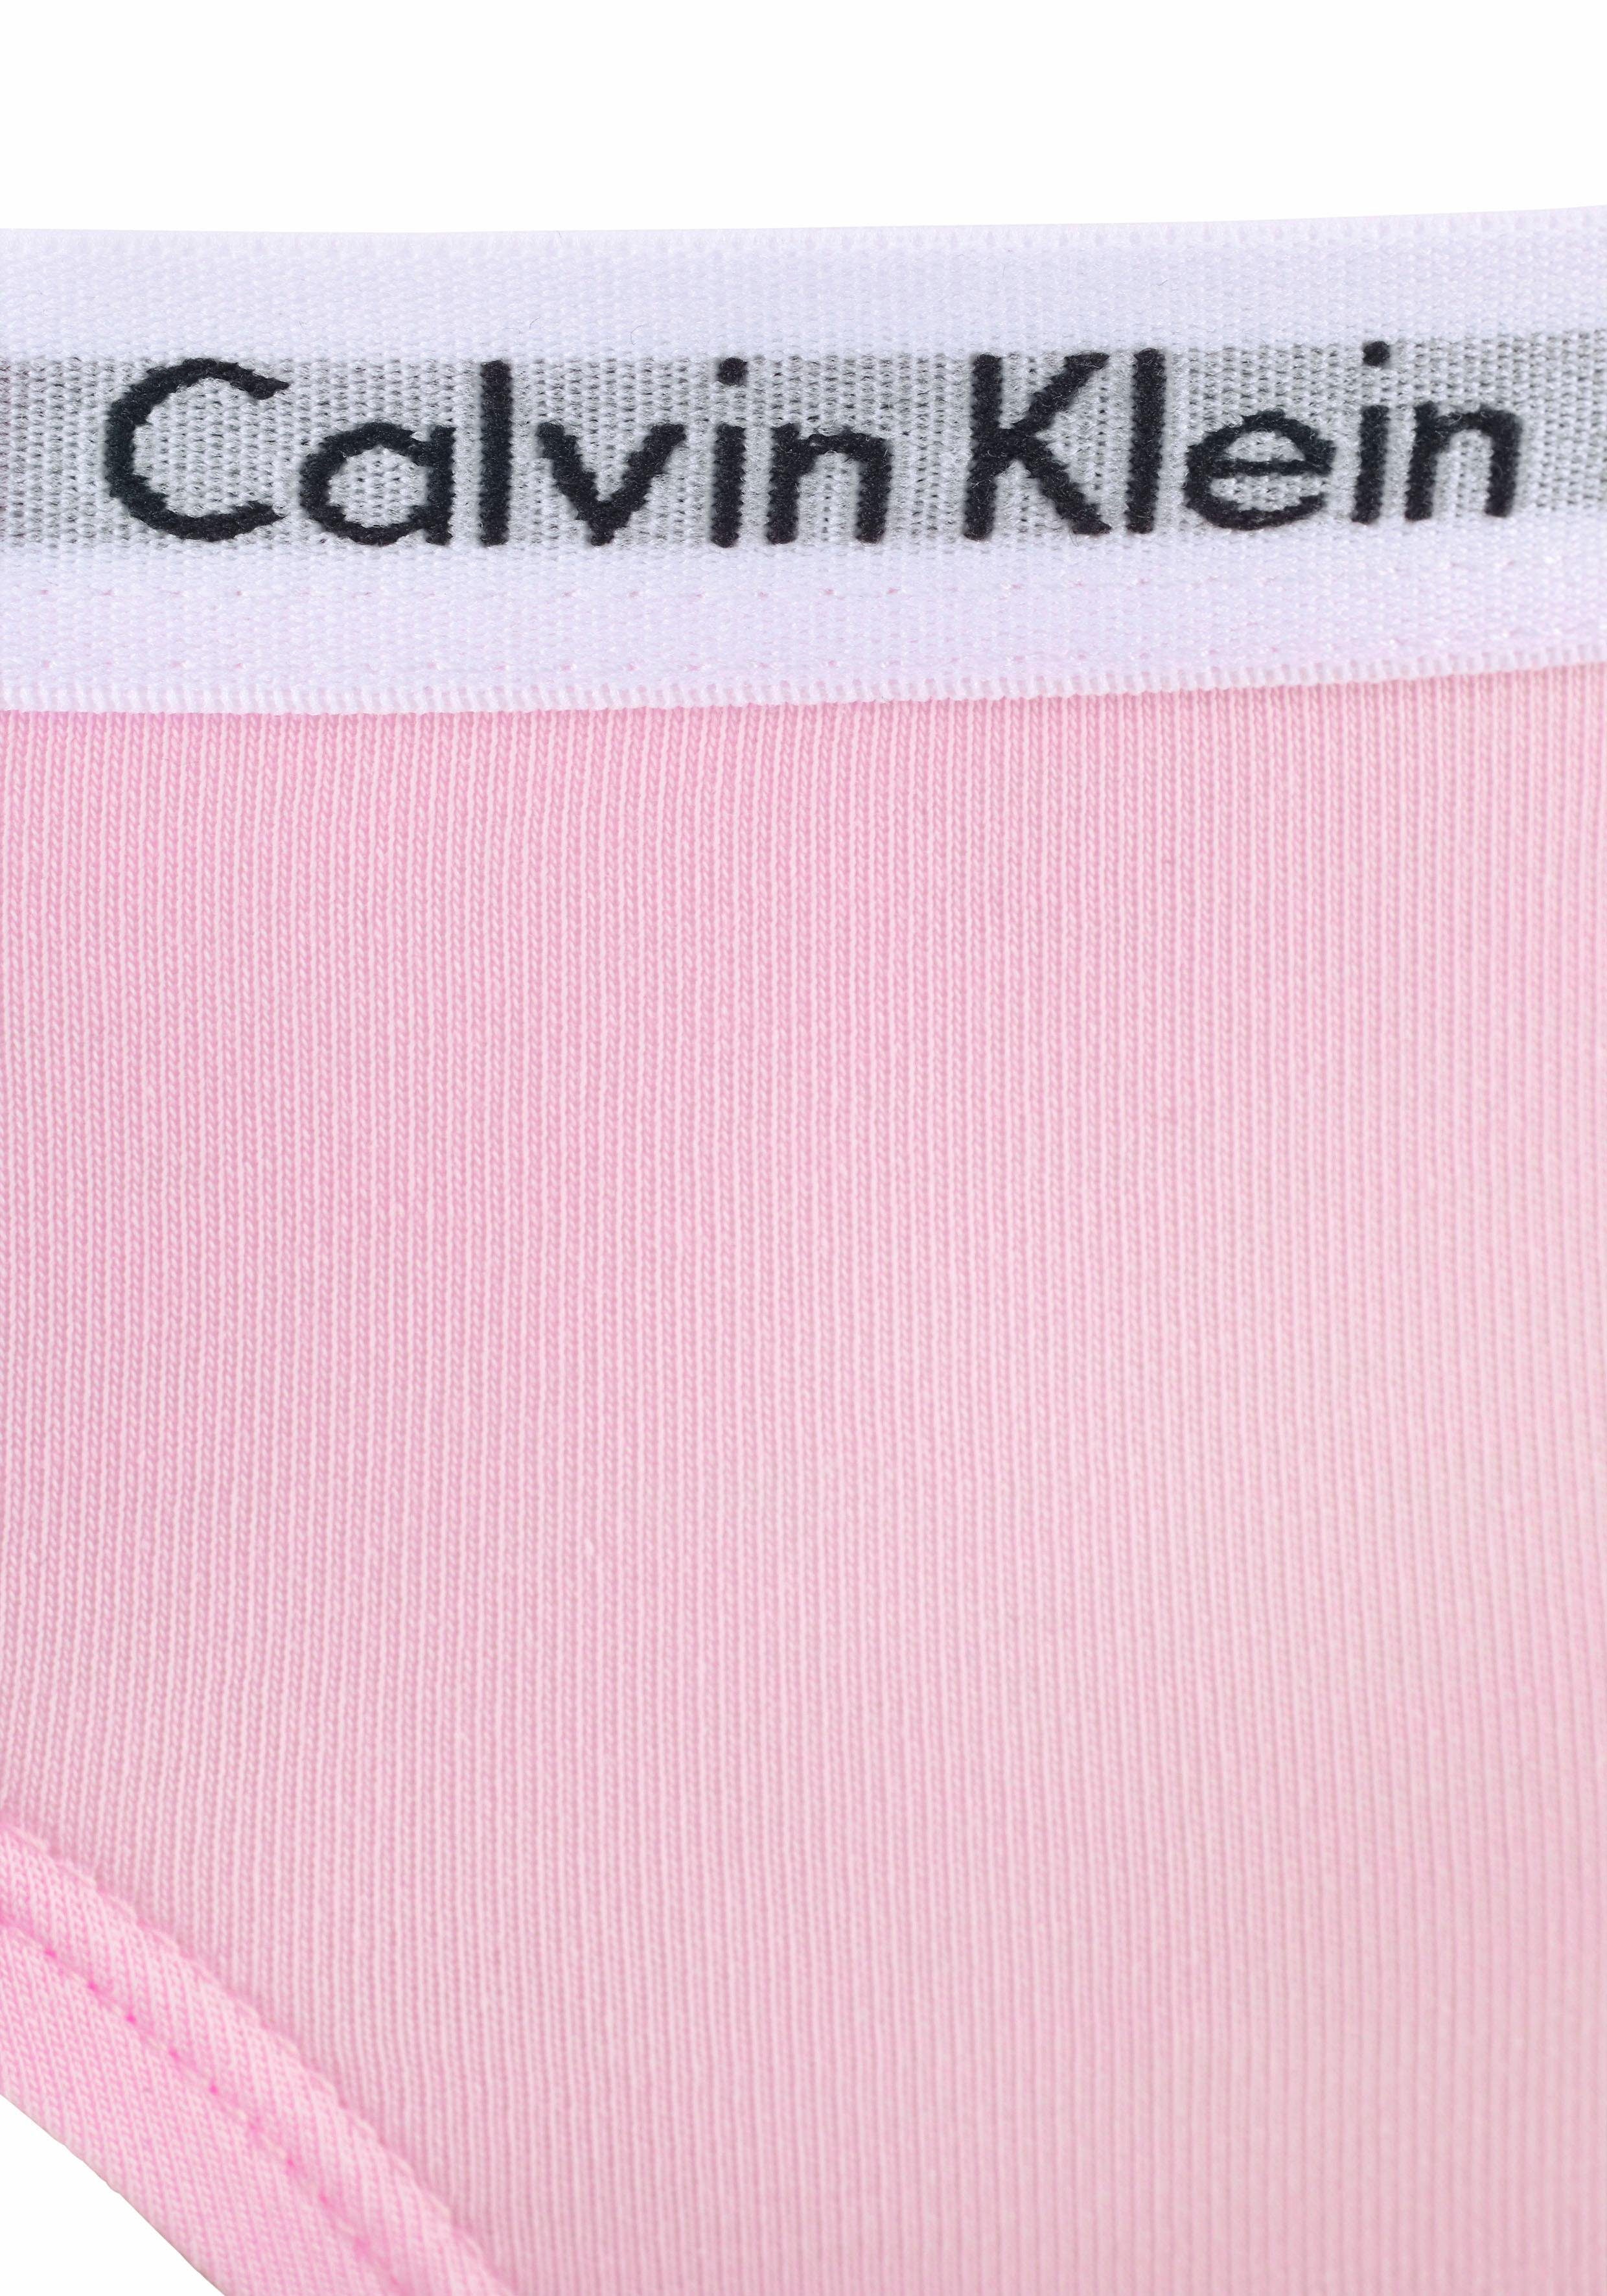 Calvin Klein Underwear Slip MiniMe,für mit Kinder Junior Logobund Kids Mädchen